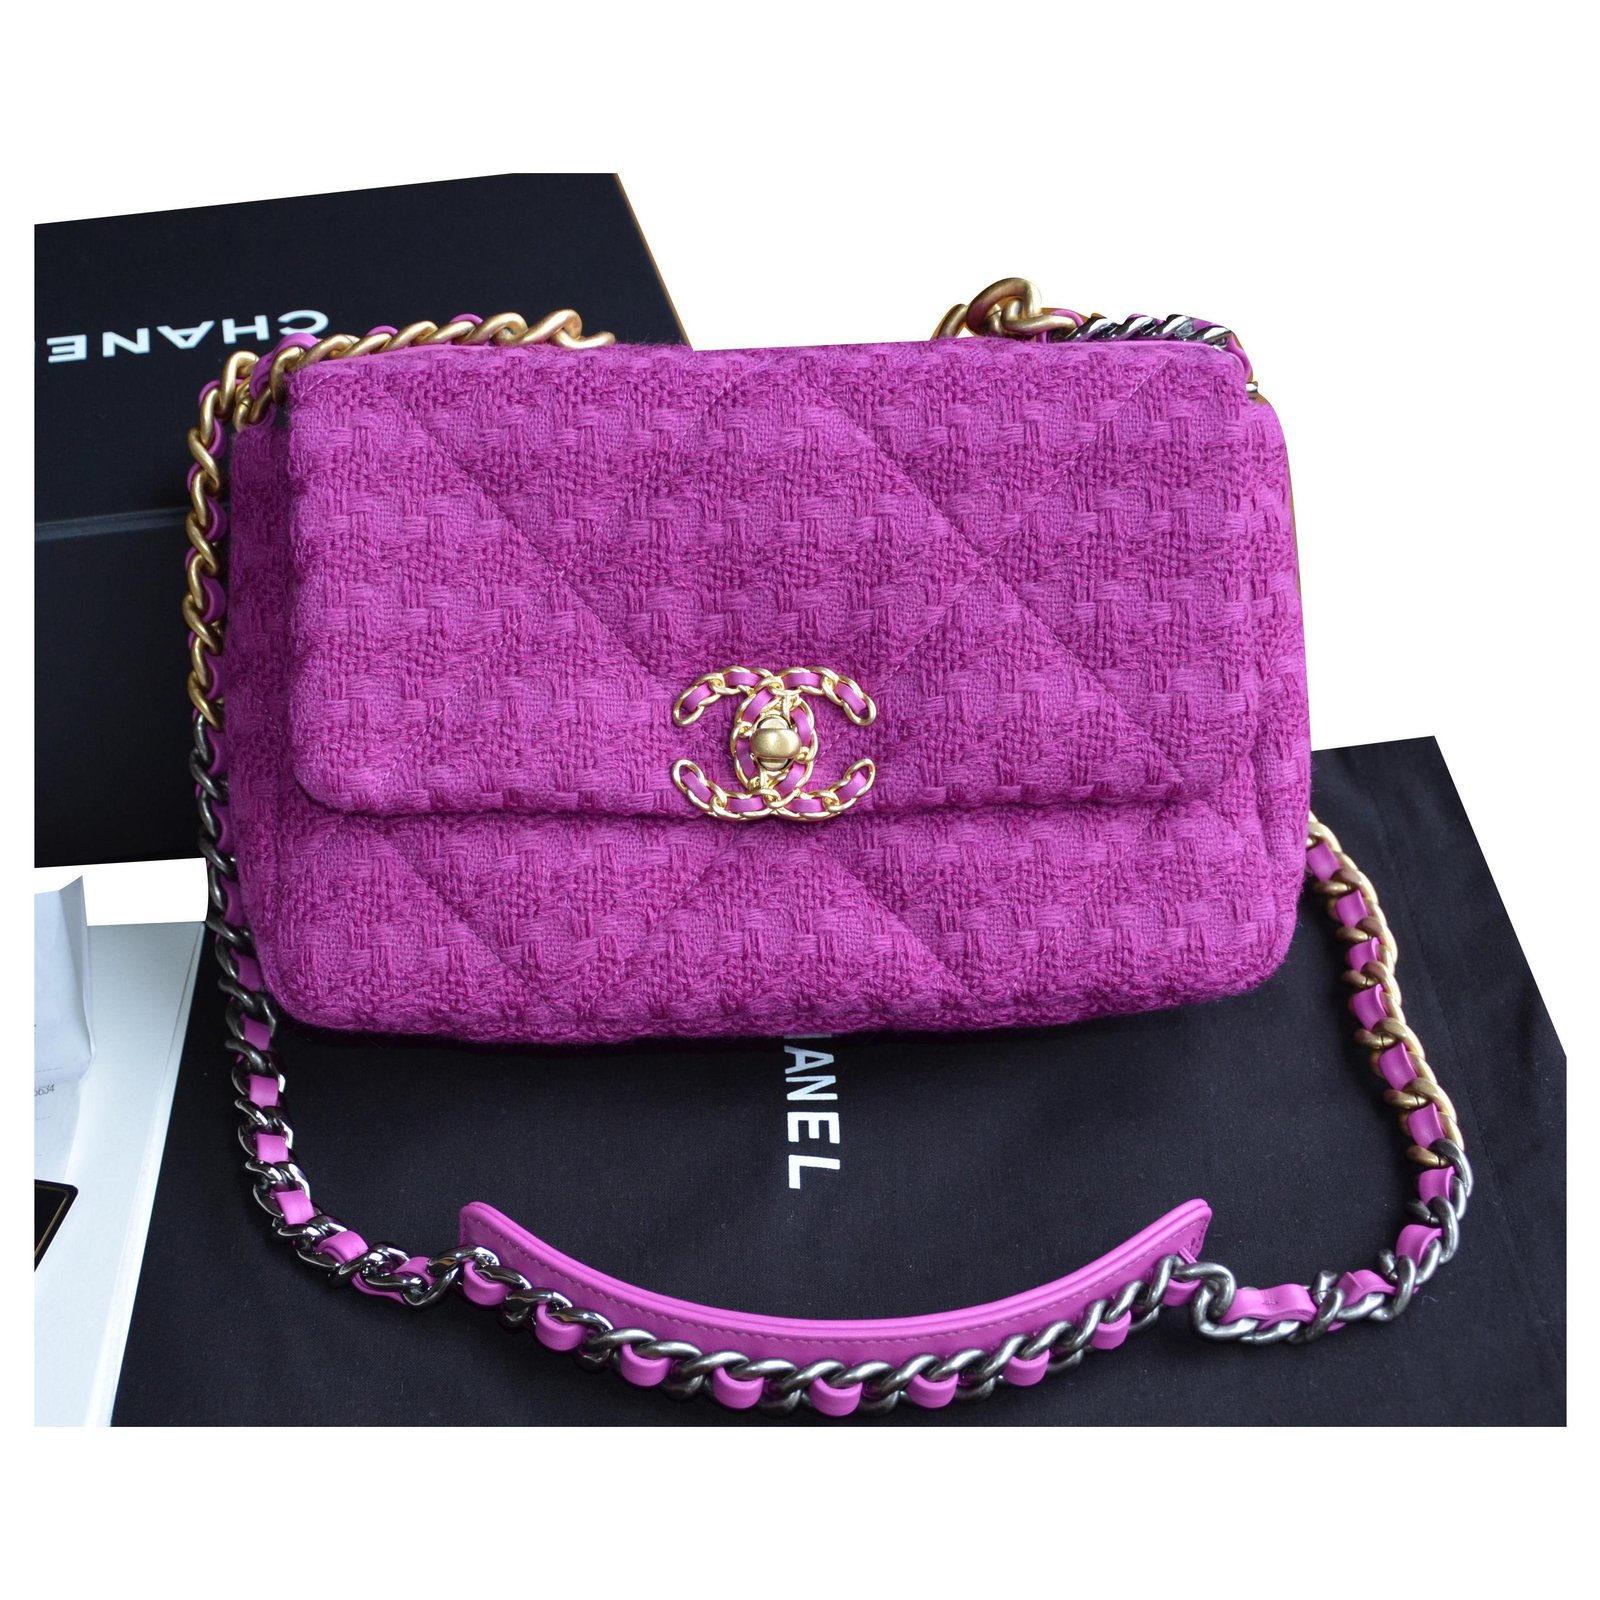 Chanel 19 tweed handbag Chanel Purple in Tweed - 34413018